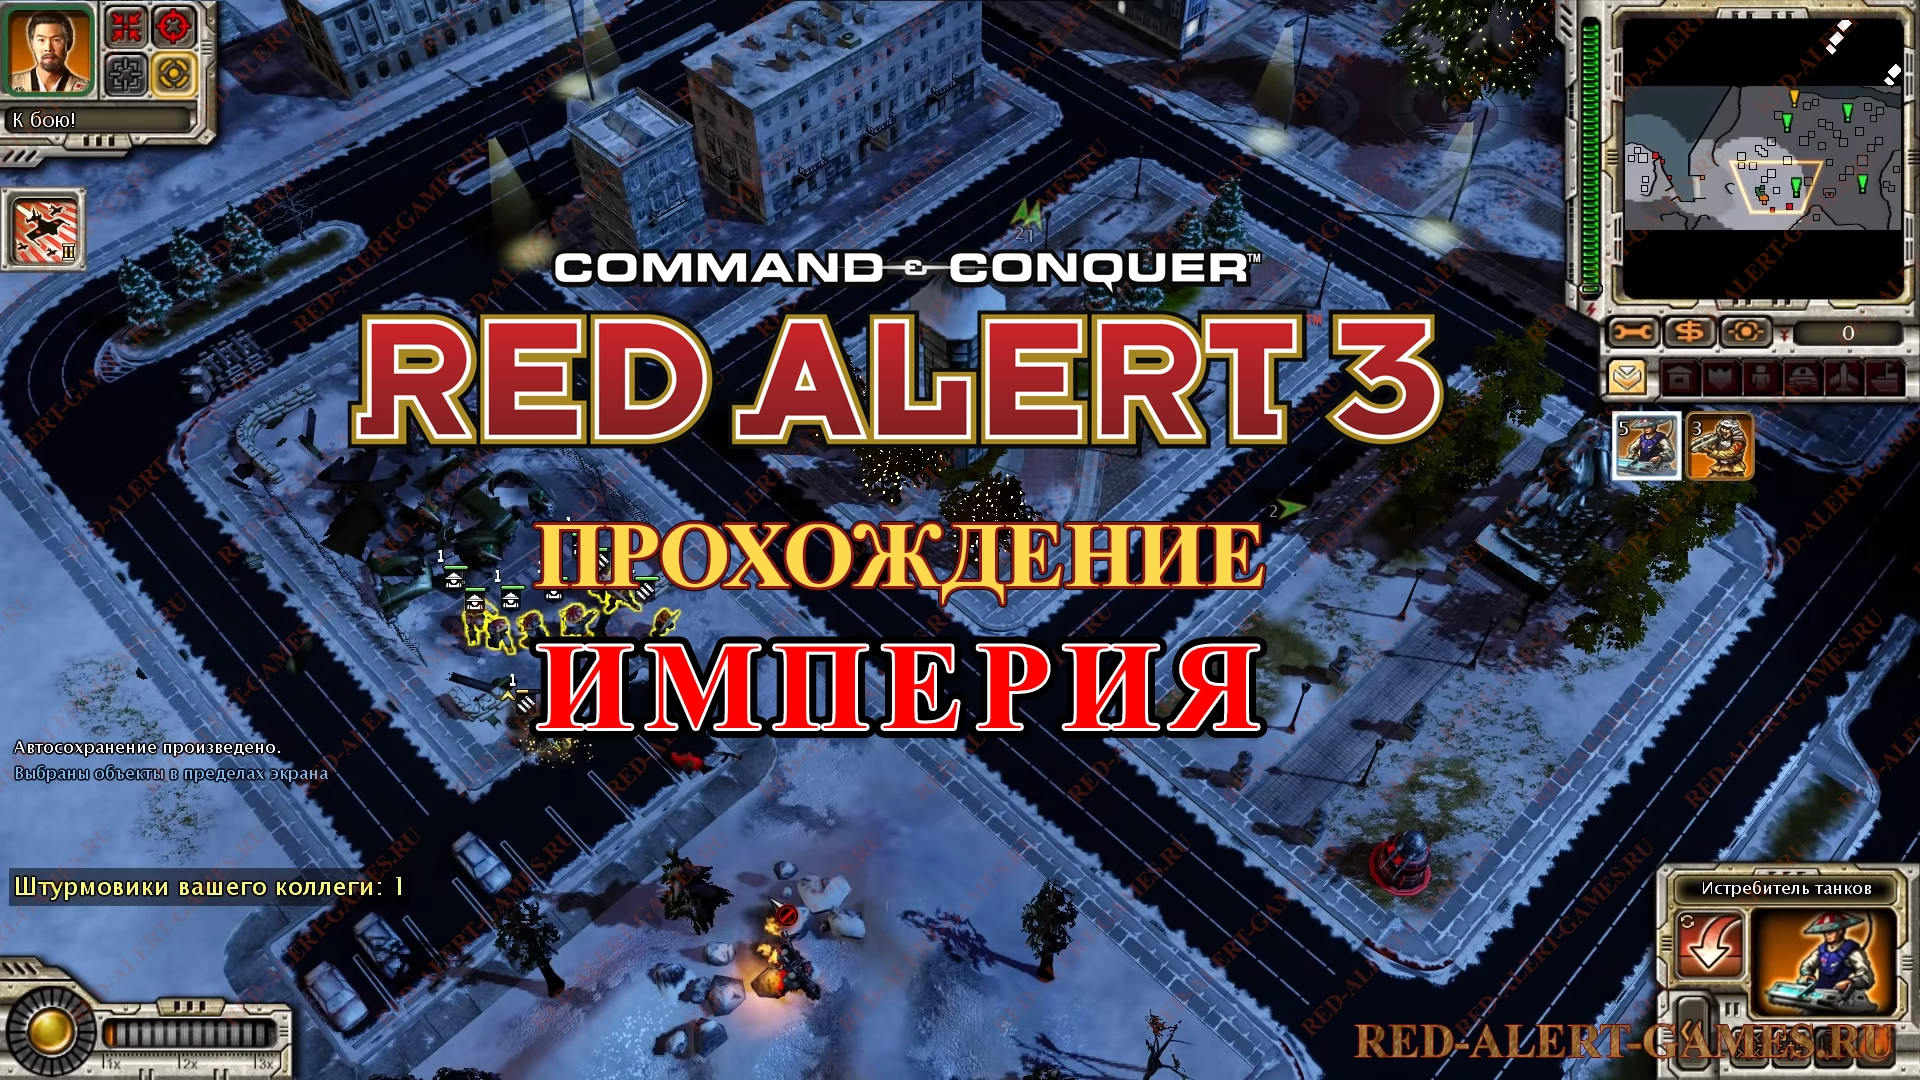 Red Alert 3 Прохождение Империя